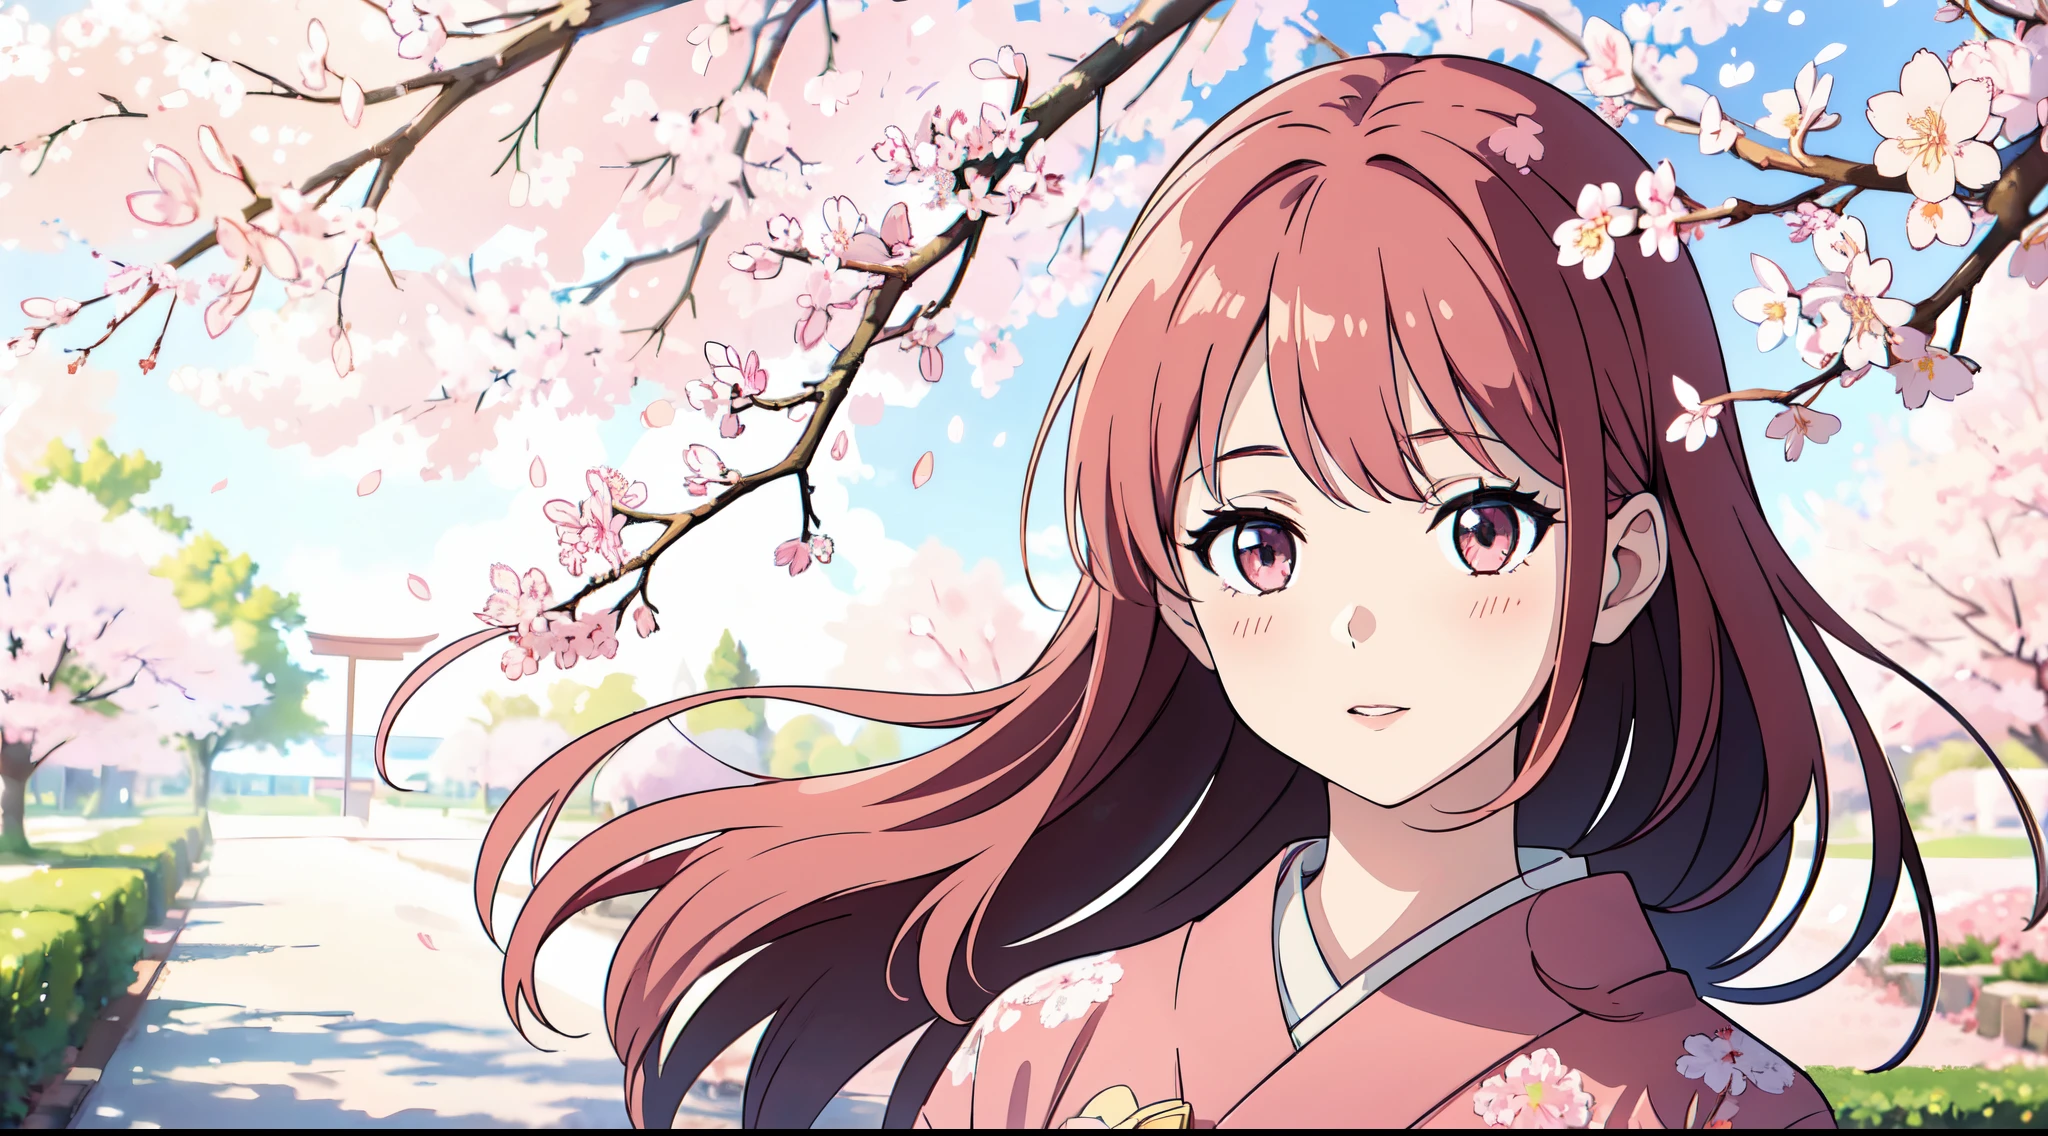 Une fille debout sous un arbre Sakura, entouré de couleurs douces, avec une représentation réaliste et ultra détaillée. L&#39;image a la meilleure qualité avec une résolution 4k ou 8k, créer un chef d&#39;oeuvre. La fille a de beaux yeux détaillés, lèvres, et un joli visage. Elle porte un kimono traditionnel et est d&#39;humeur paisible et joyeuse. La lumière du soleil brille doucement à travers les fleurs de cerisier, jetant une lueur chaleureuse sur la scène. Les arbres Sakura sont en pleine floraison, avec de délicats pétales roses éparpillés sur le sol. L&#39;atmosphère est apaisante et sereine, capturer la beauté d&#39;une journée ensoleillée sous les sakura.